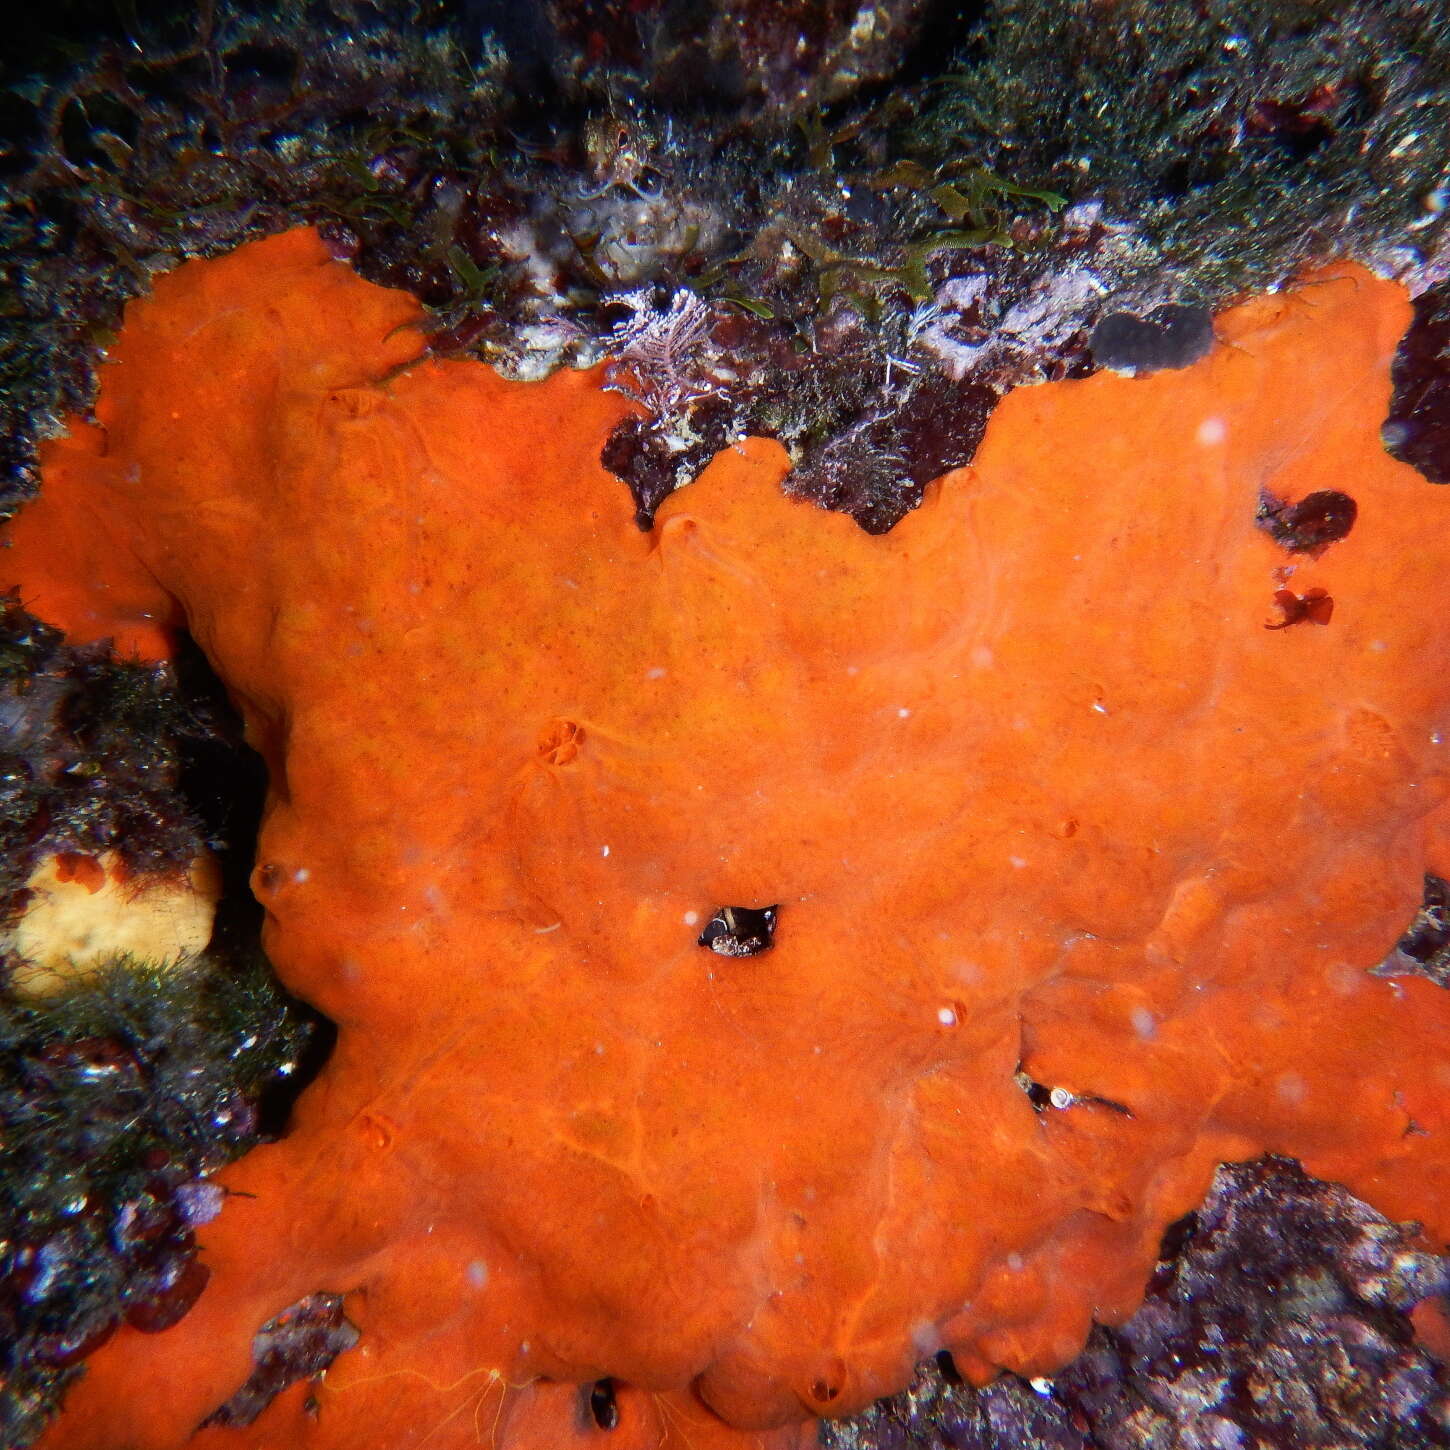 Image of bumping encrusting sponge